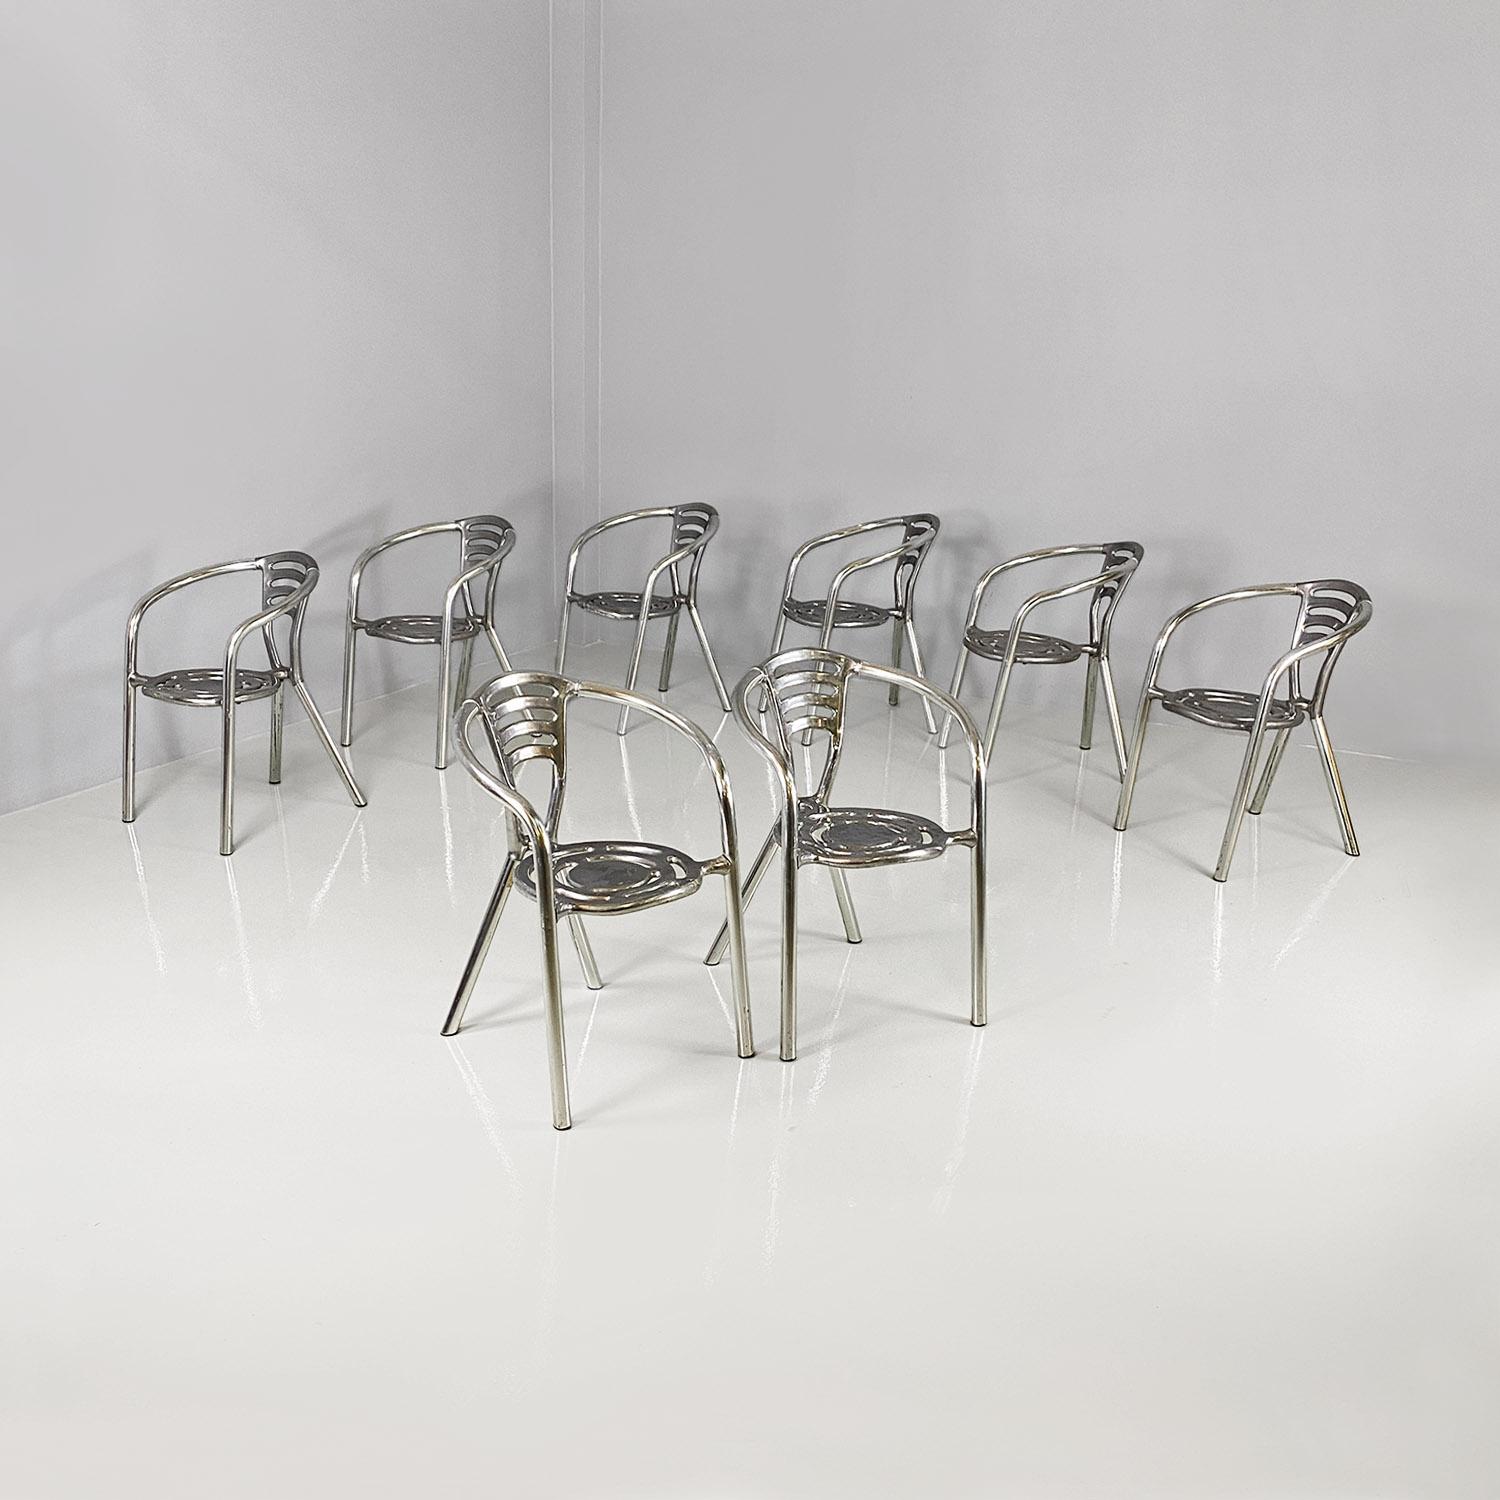 Ensemble de huit chaises modèle Boulevard avec assise ronde, entièrement en aluminium. L'assise et le dossier présentent des perforations décoratives aux lignes courbes et la structure des accoudoirs et des pieds est en tubes d'aluminium. La